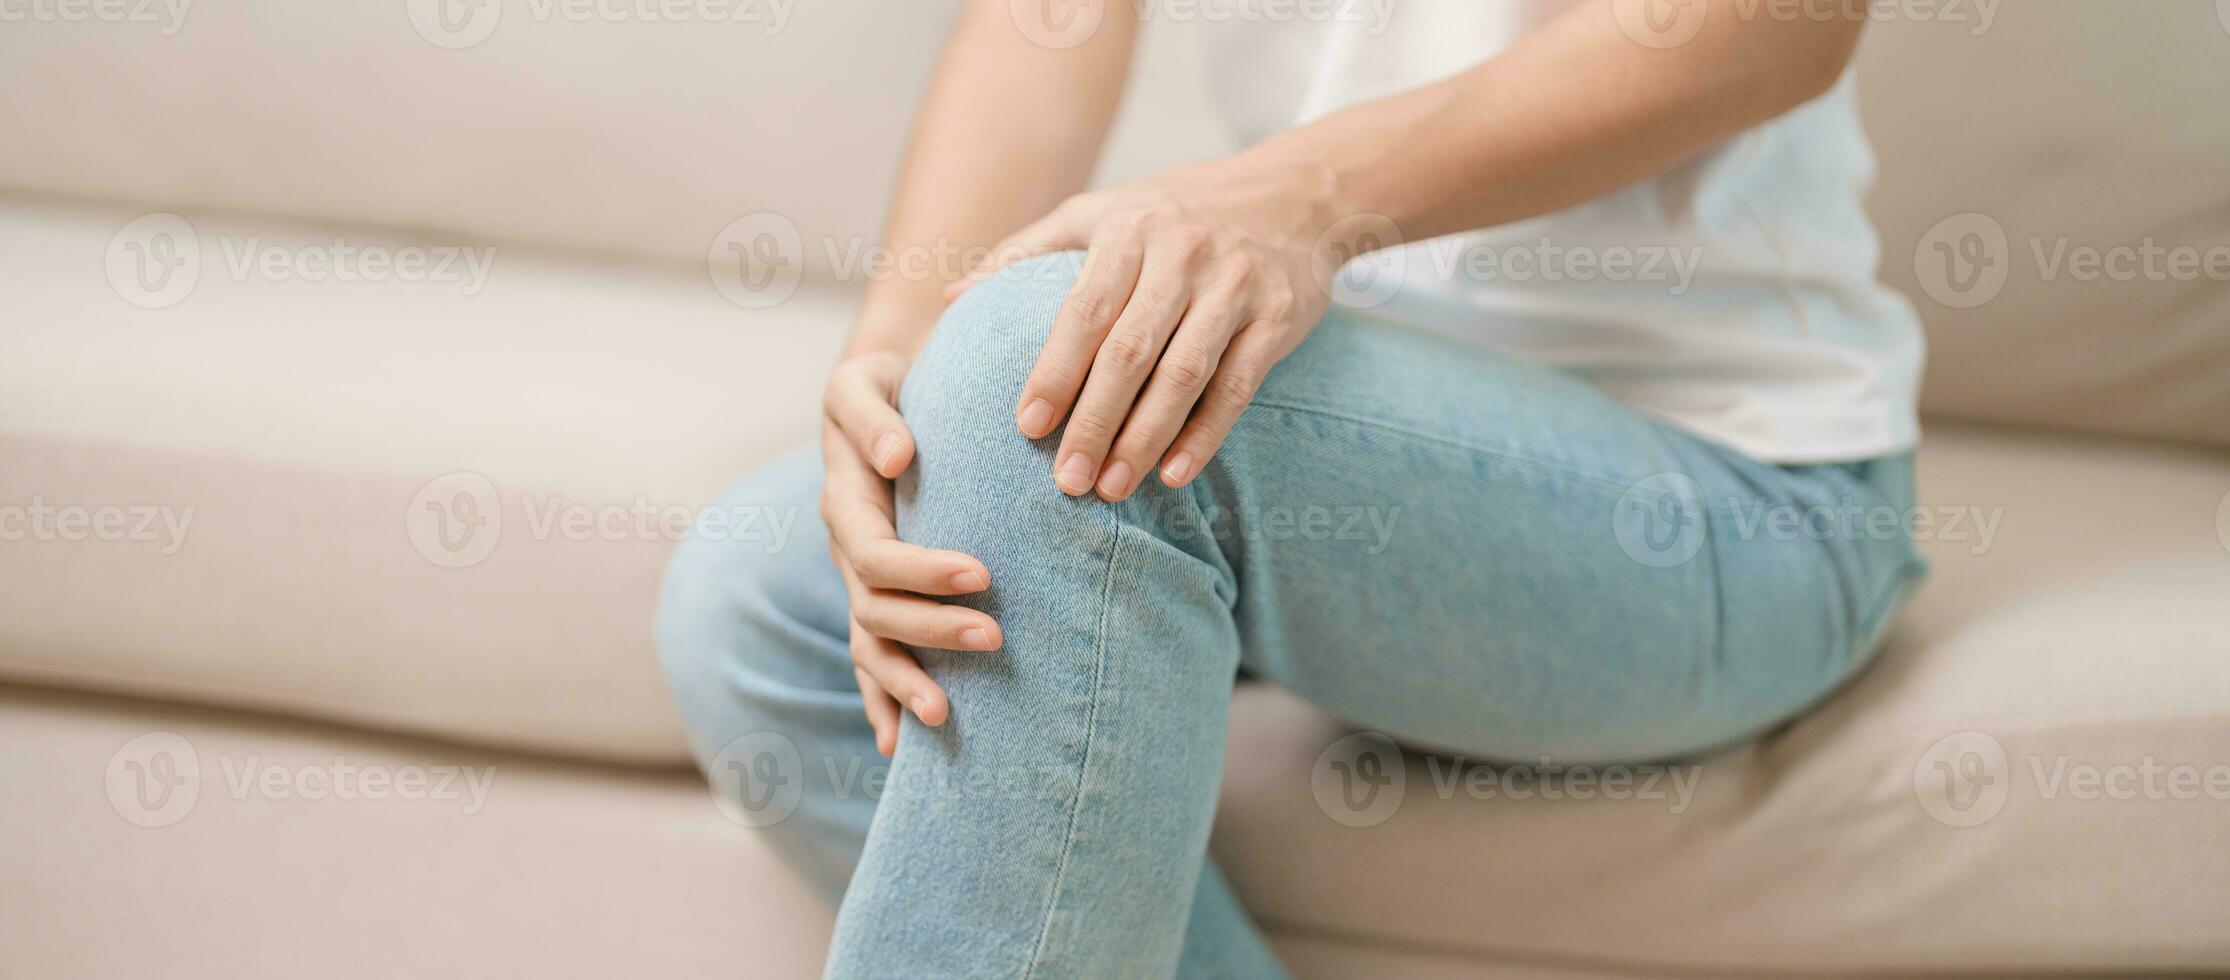 donna avendo ginocchio dolore e muscolo dolore dovuto per corridori ginocchio o femoro-rotuleo dolore sindrome, osteoartrite, artrite, reumatismo e rotuleo tendinite. medico concetto foto